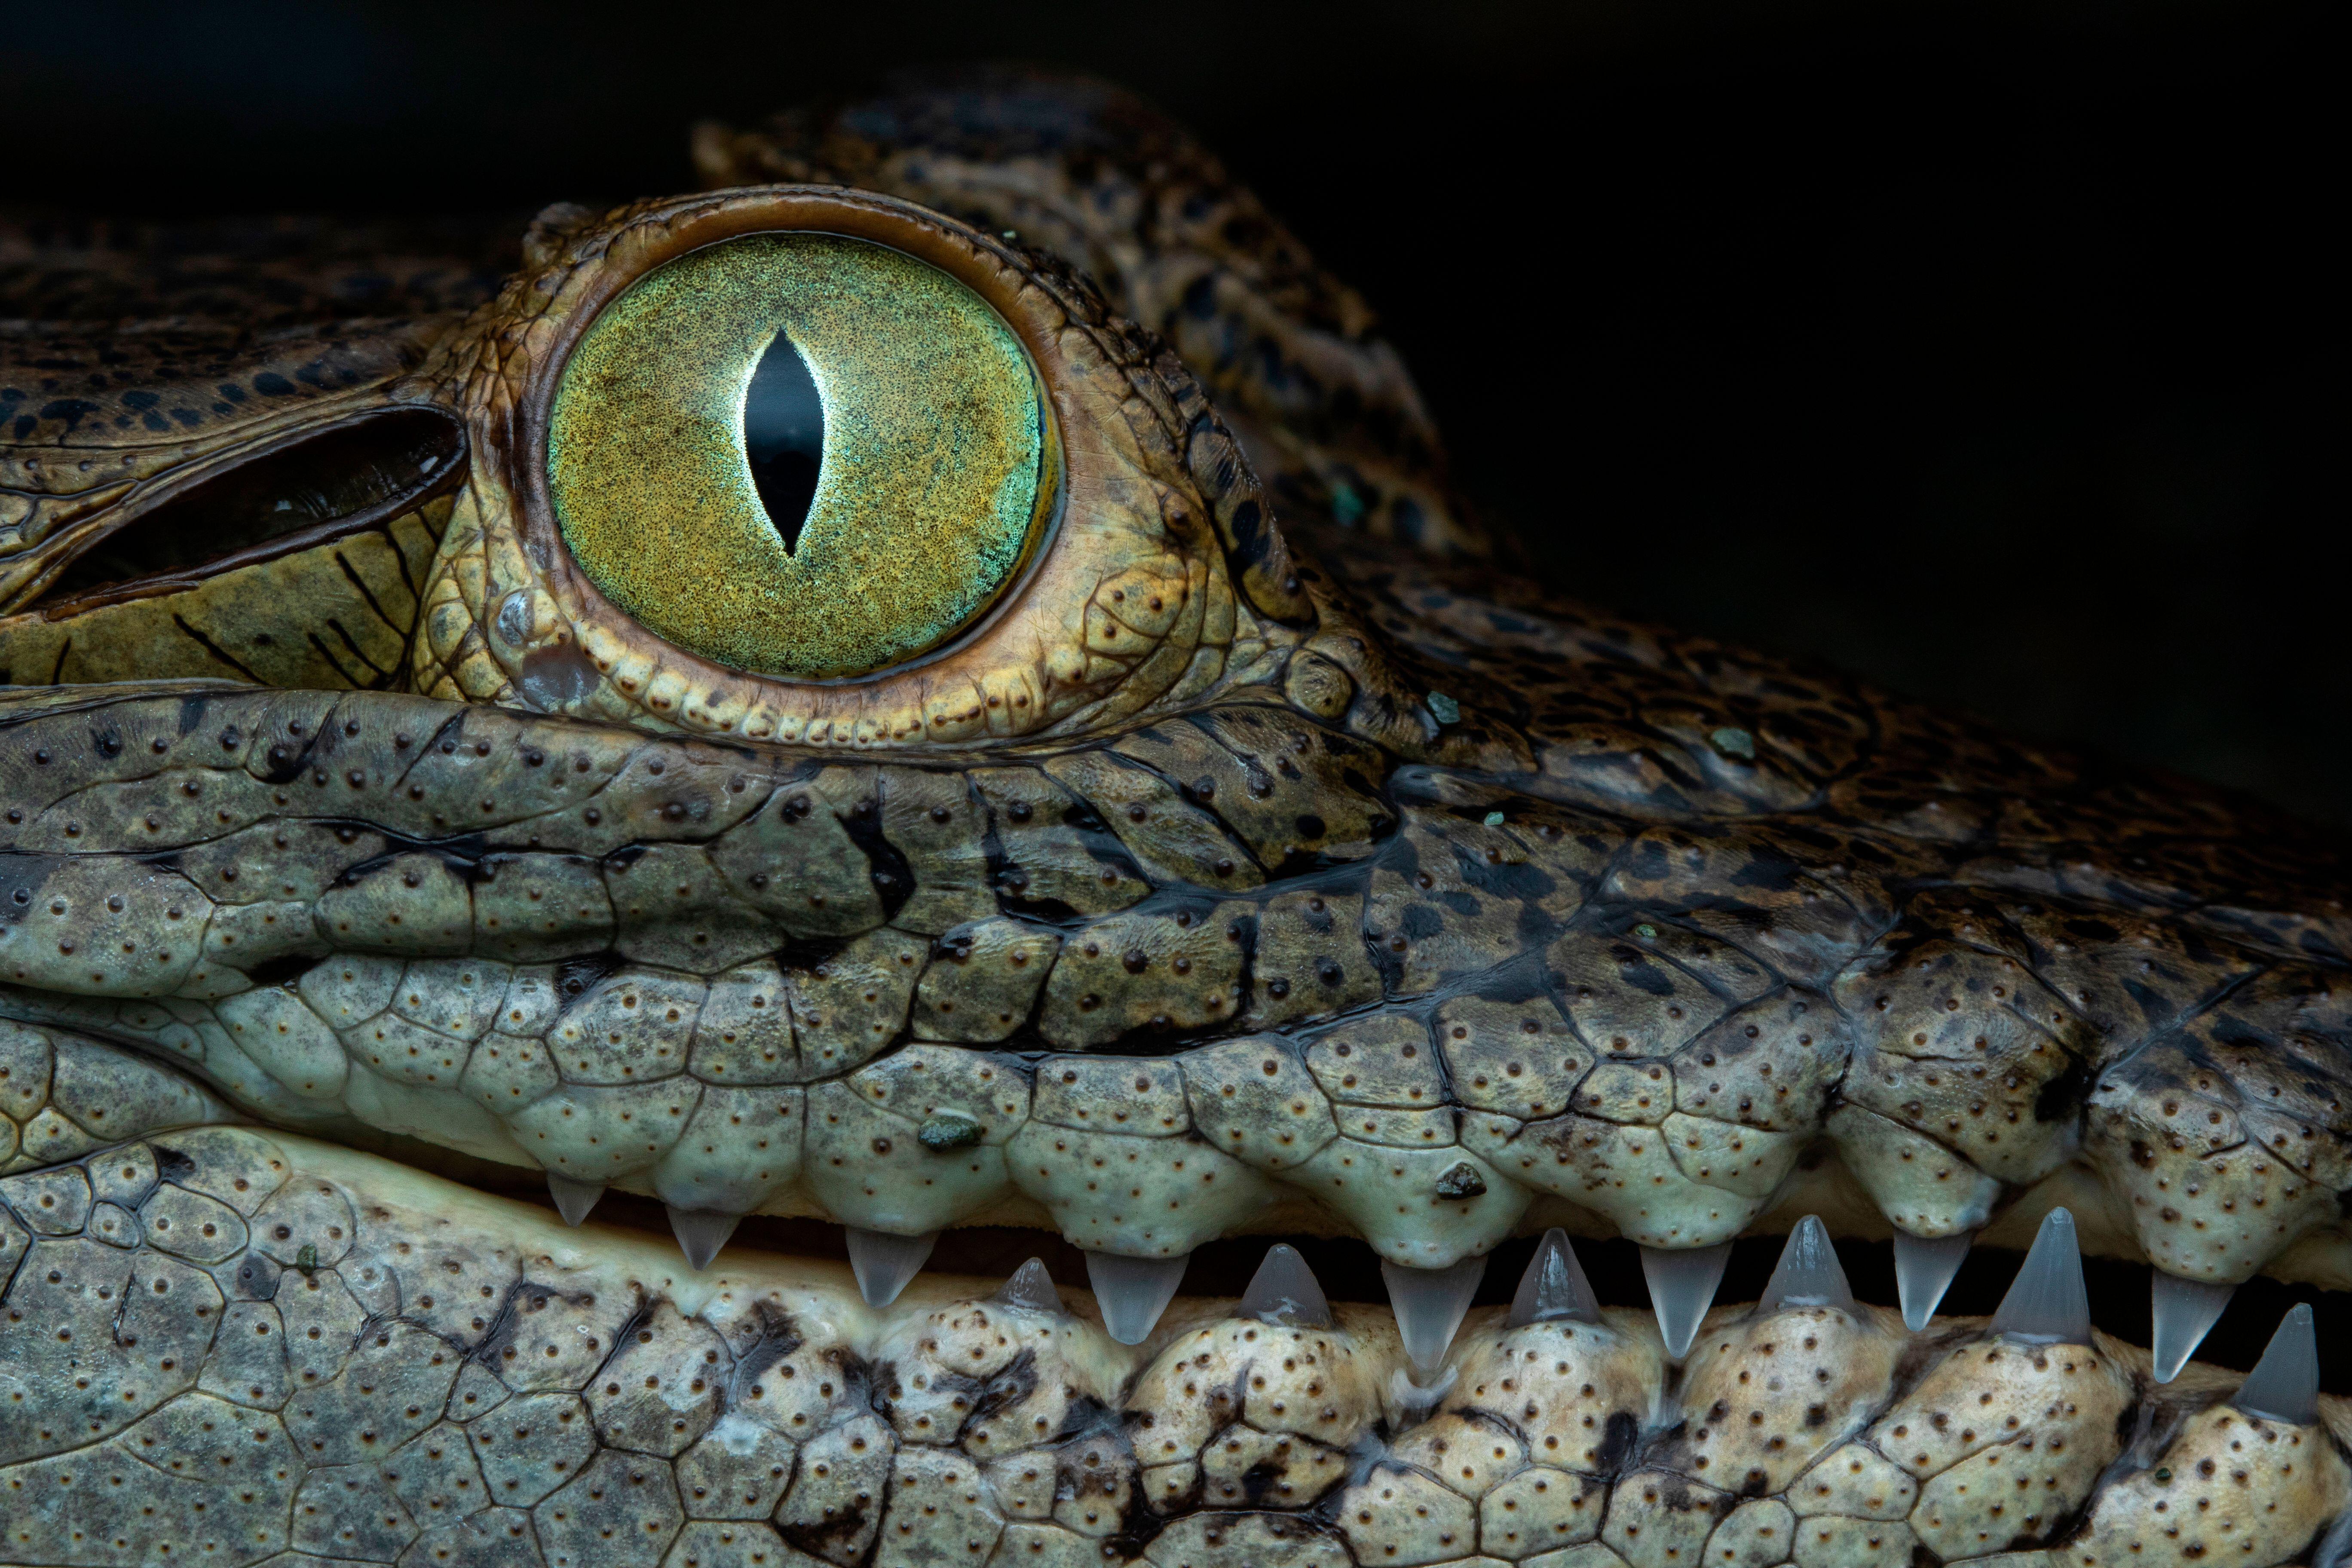 Photo of Crocodile